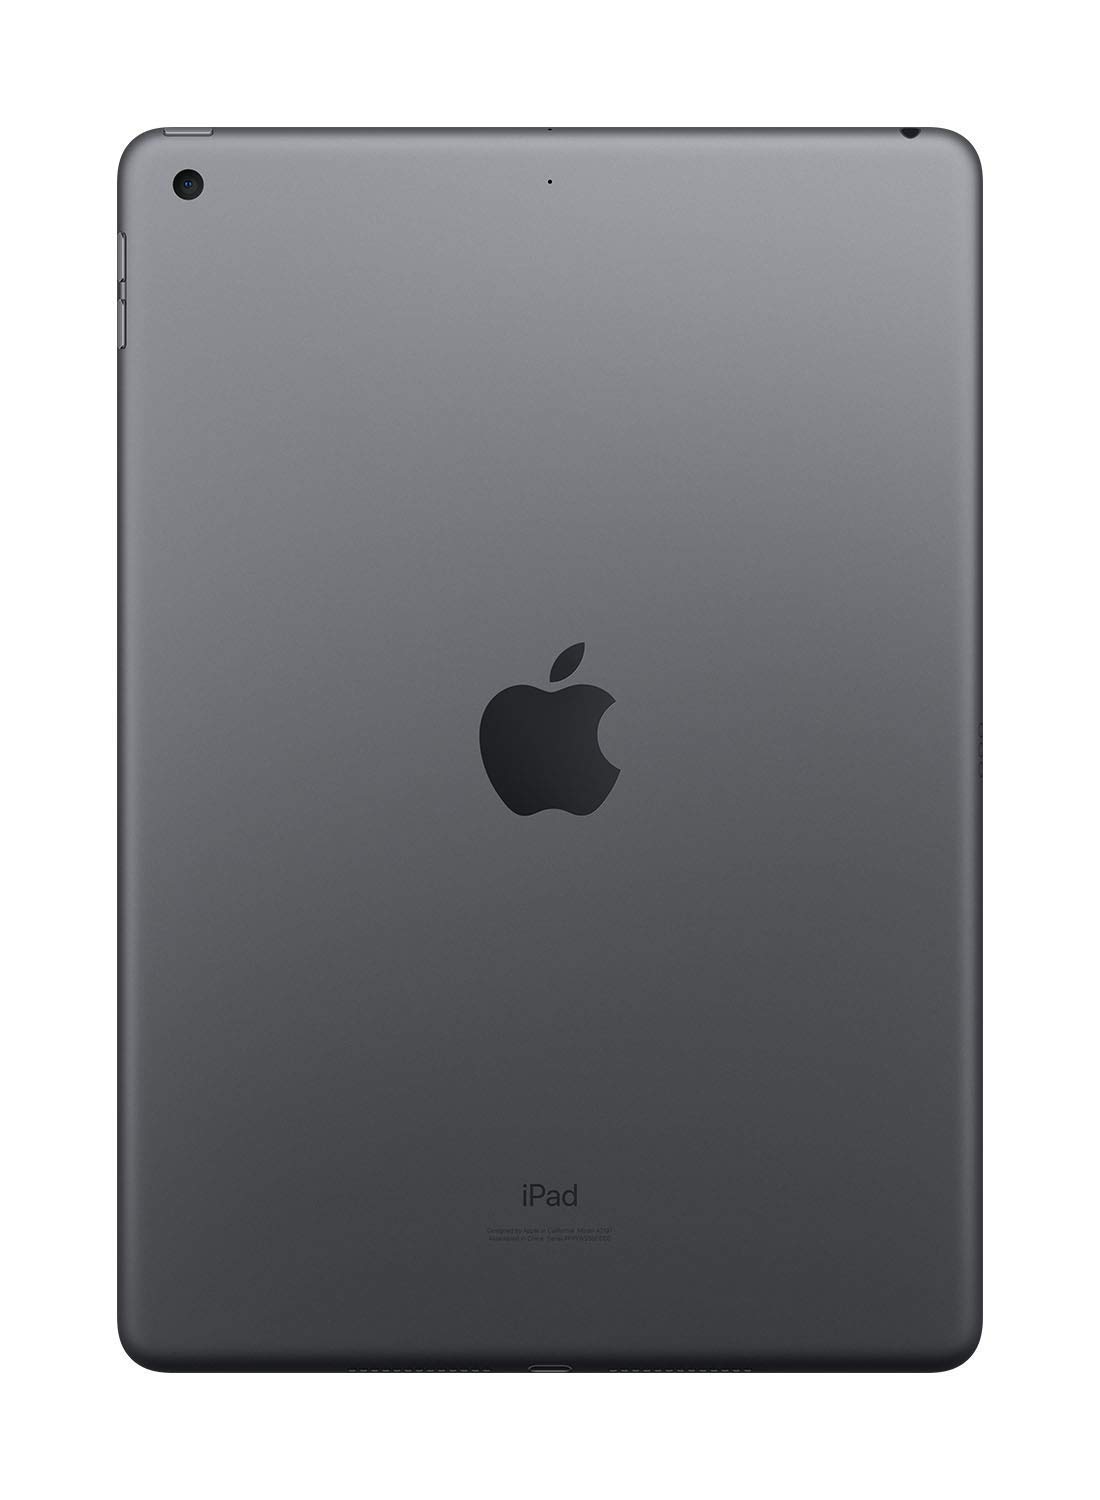 Apple iPad (10.2-Inch, Wi-Fi, 128GB) - Space Gray (Renewed)